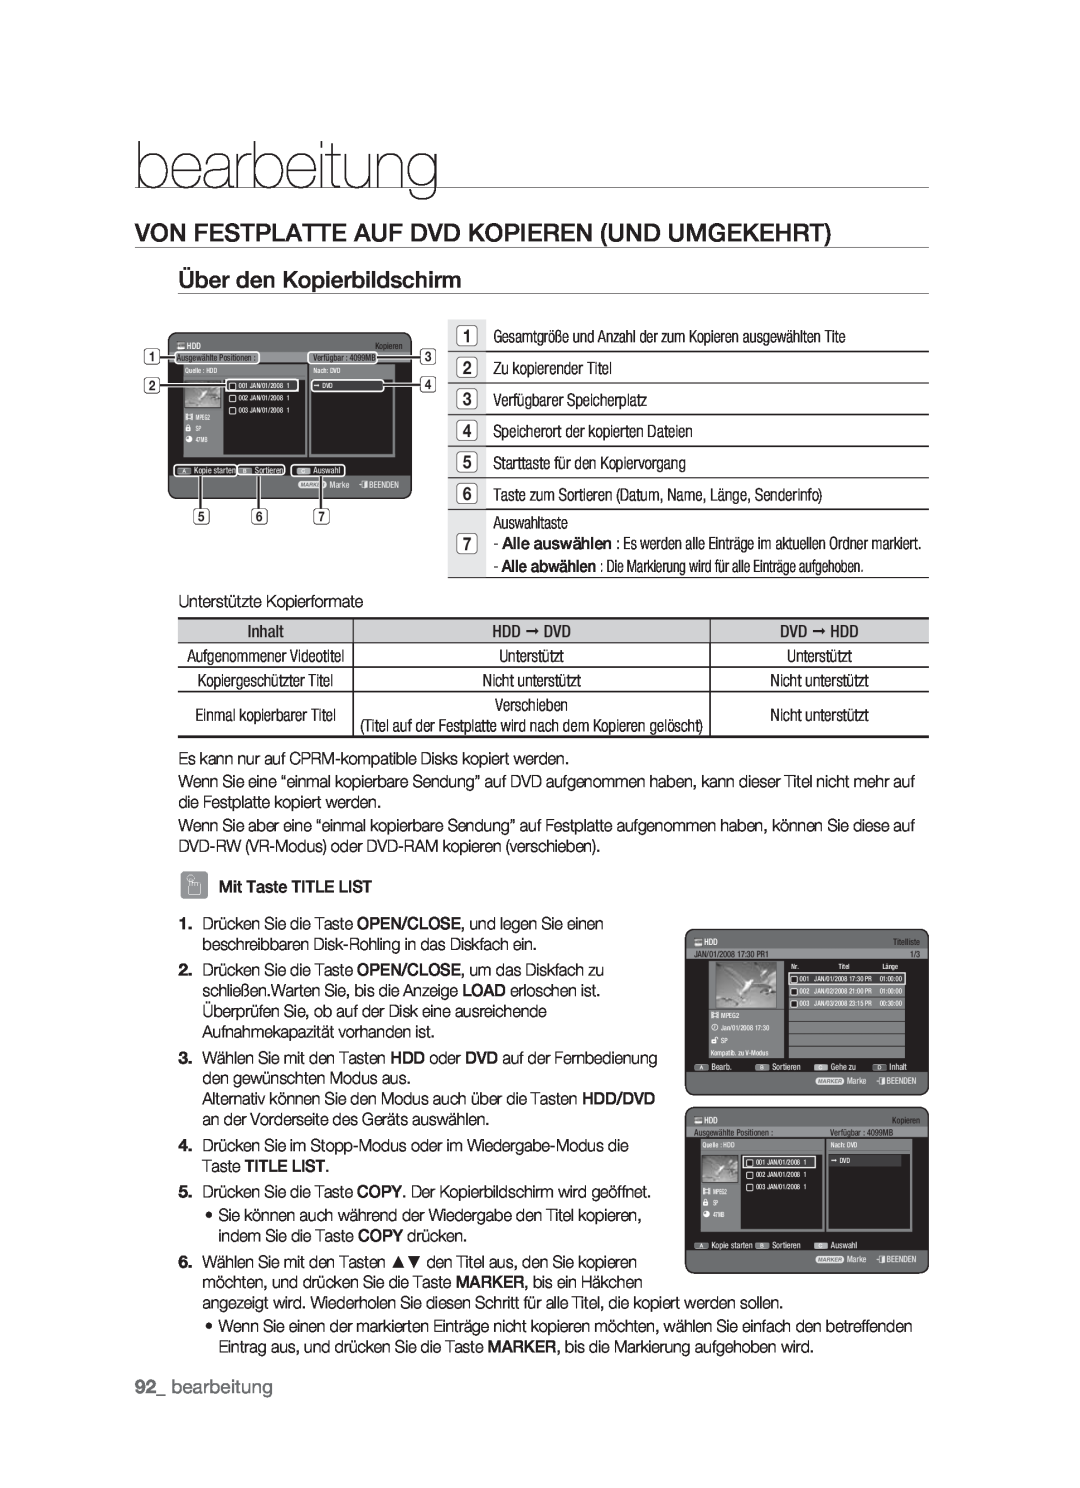 Samsung DVD-HR773/XEN, DVD-HR773/XEB Von Festplatte Auf Dvd Kopieren Und Umgekehrt, Über den Kopierbildschirm, bearbeitung 